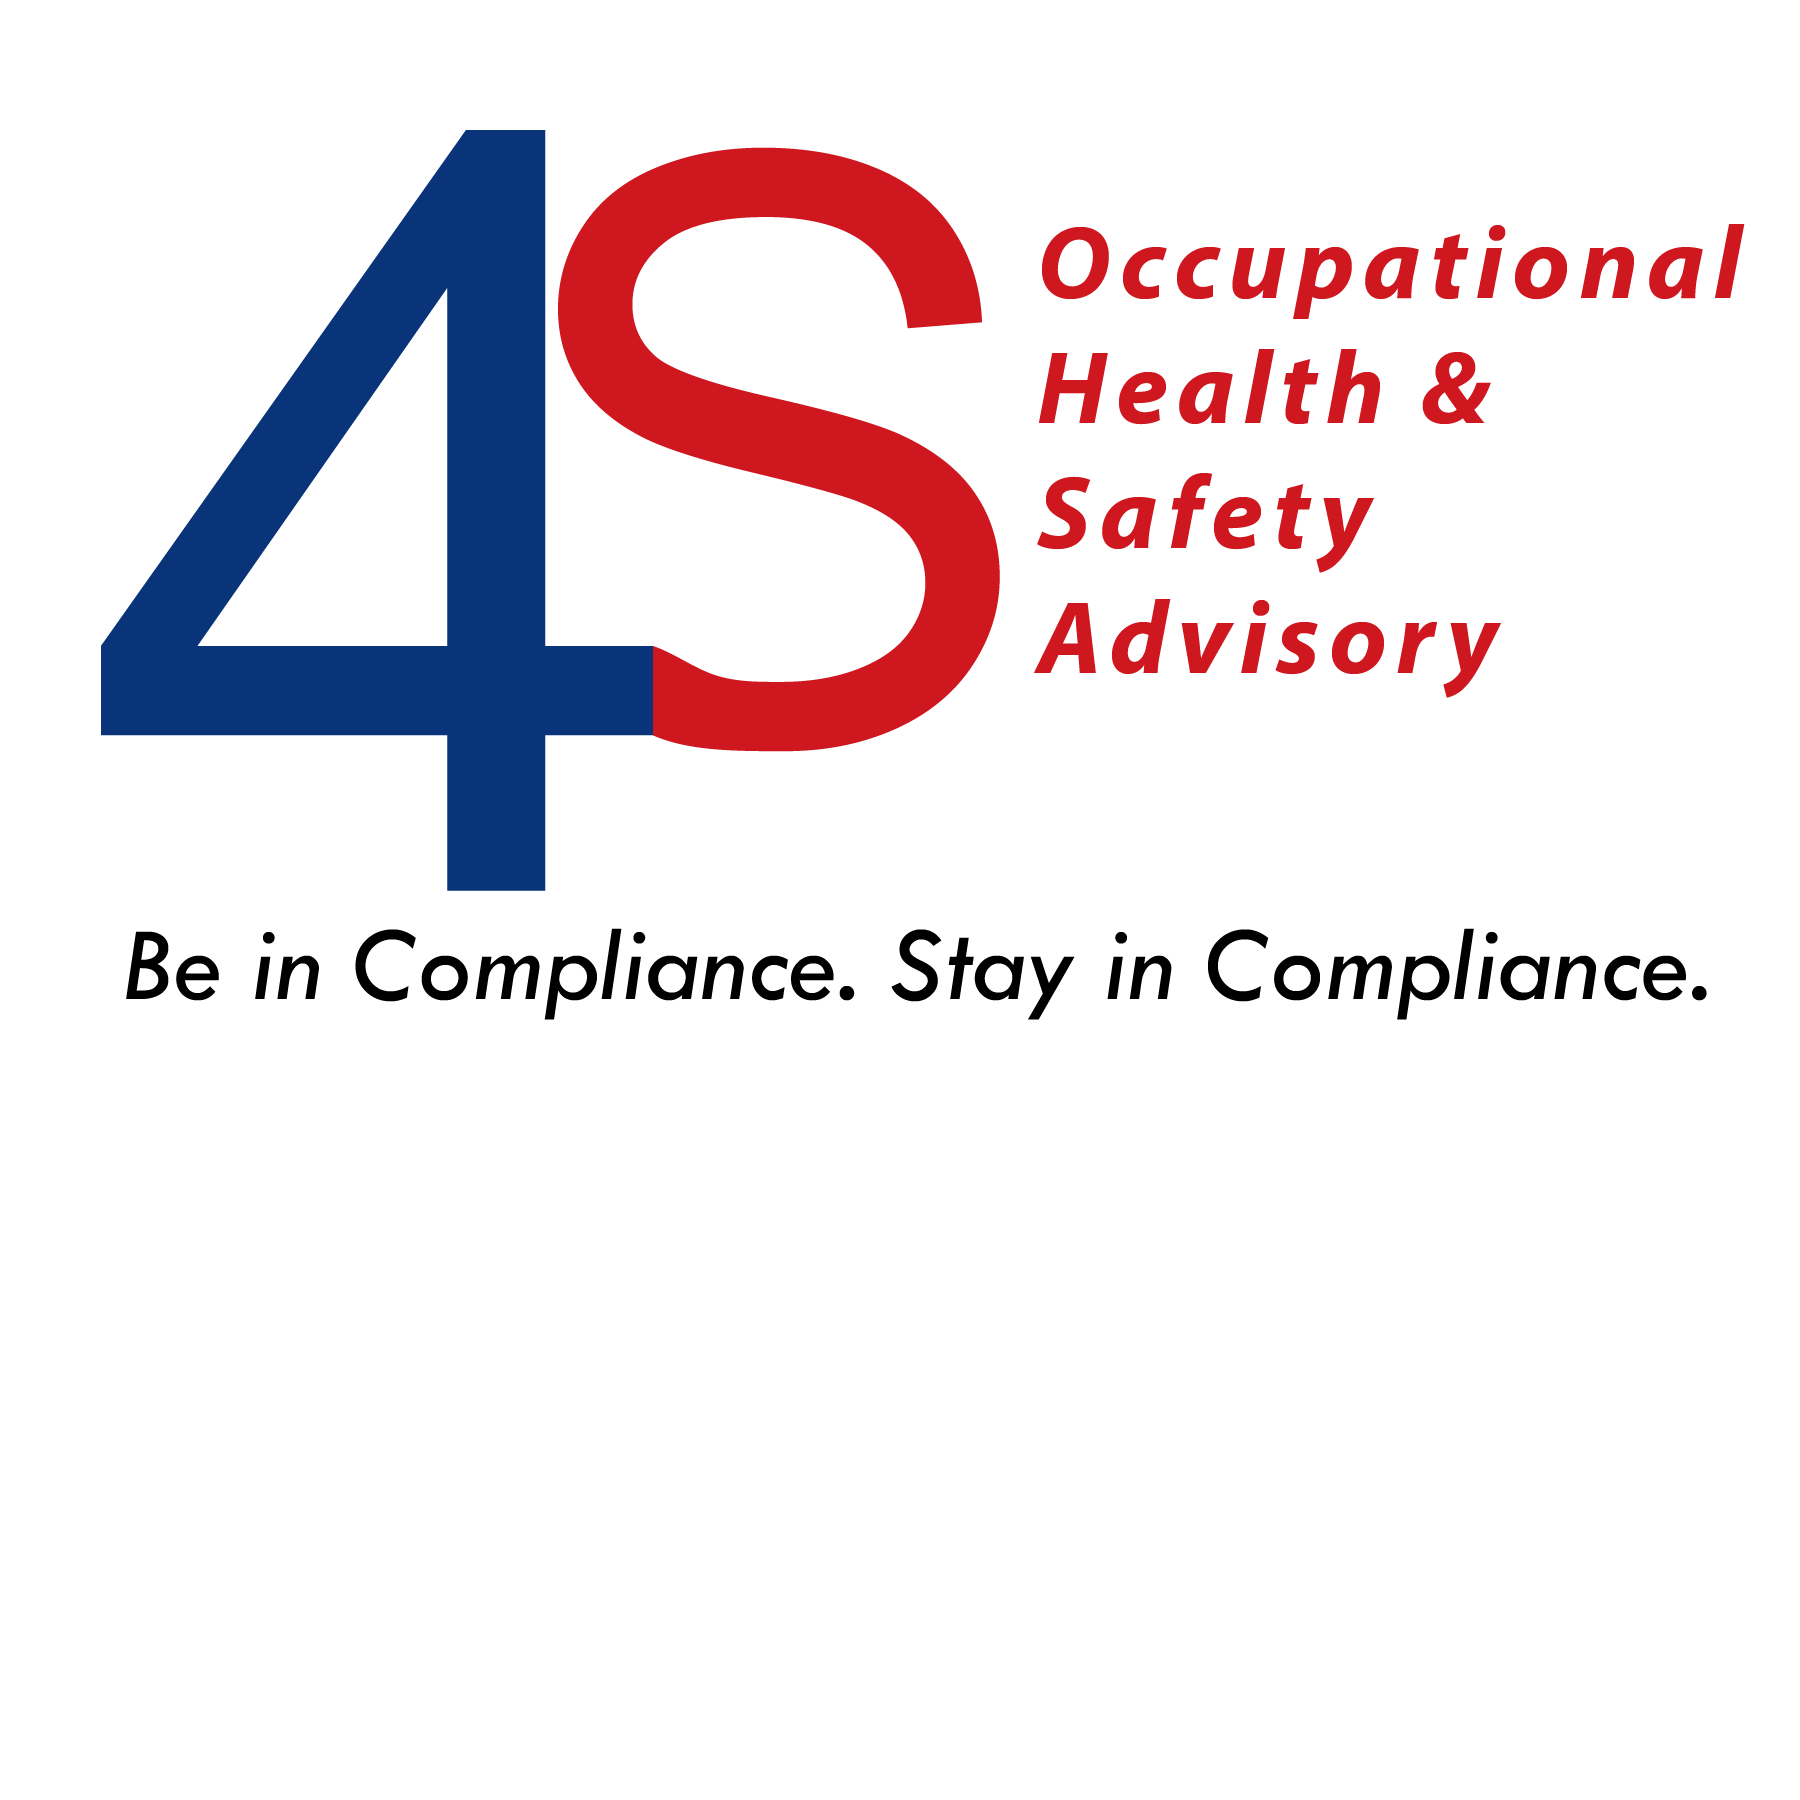 4S logo